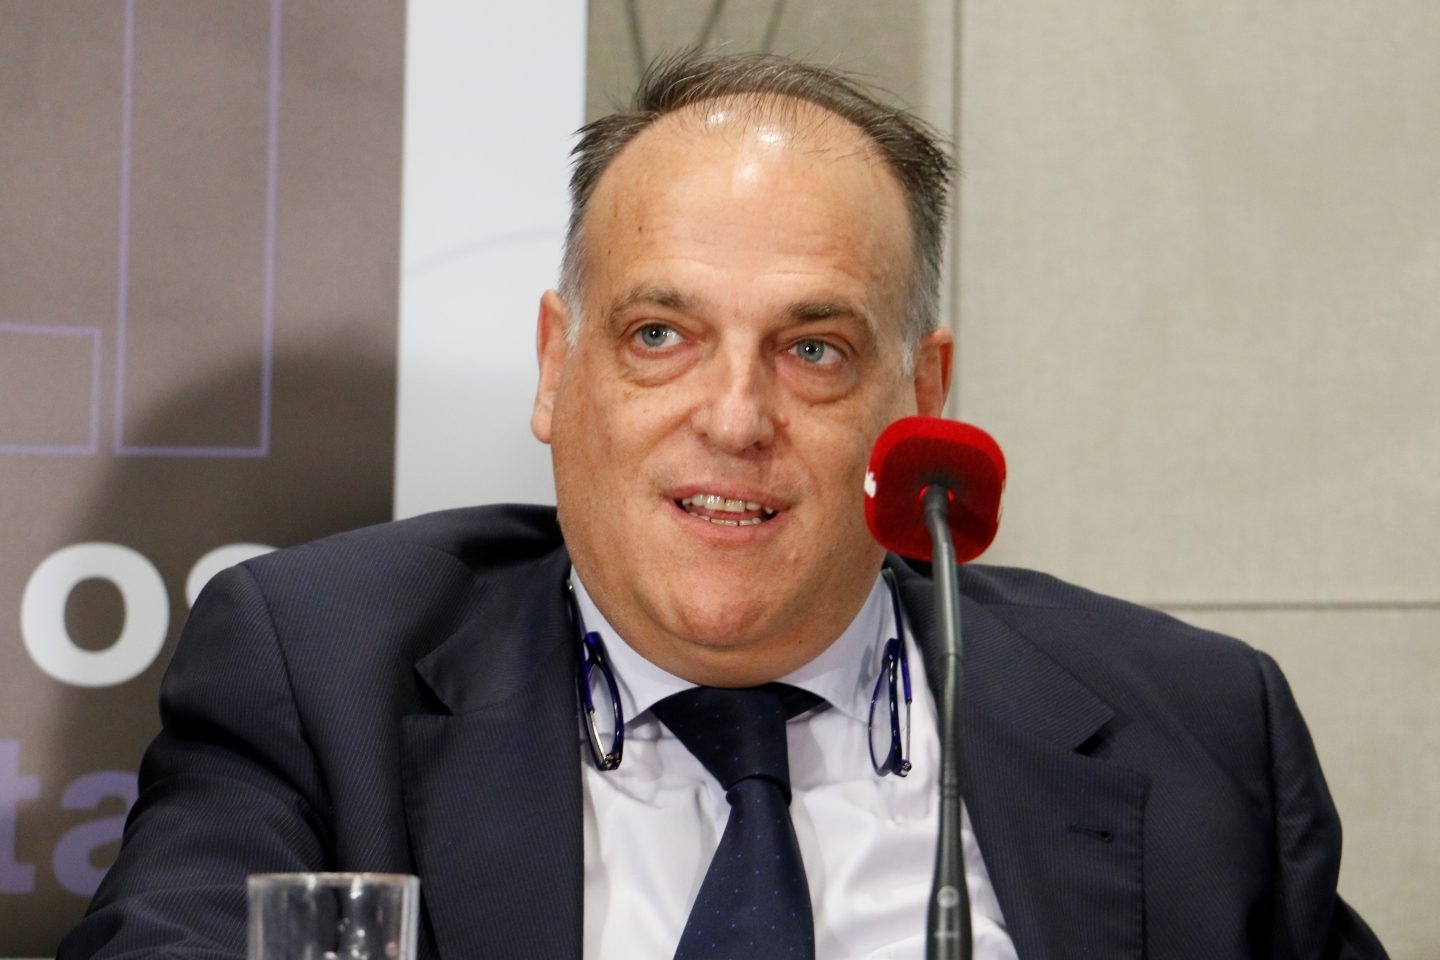 El presidente de la Liga de Fútbol Profesional, Javier Tebas, investigado por supuesto fraude fiscal.